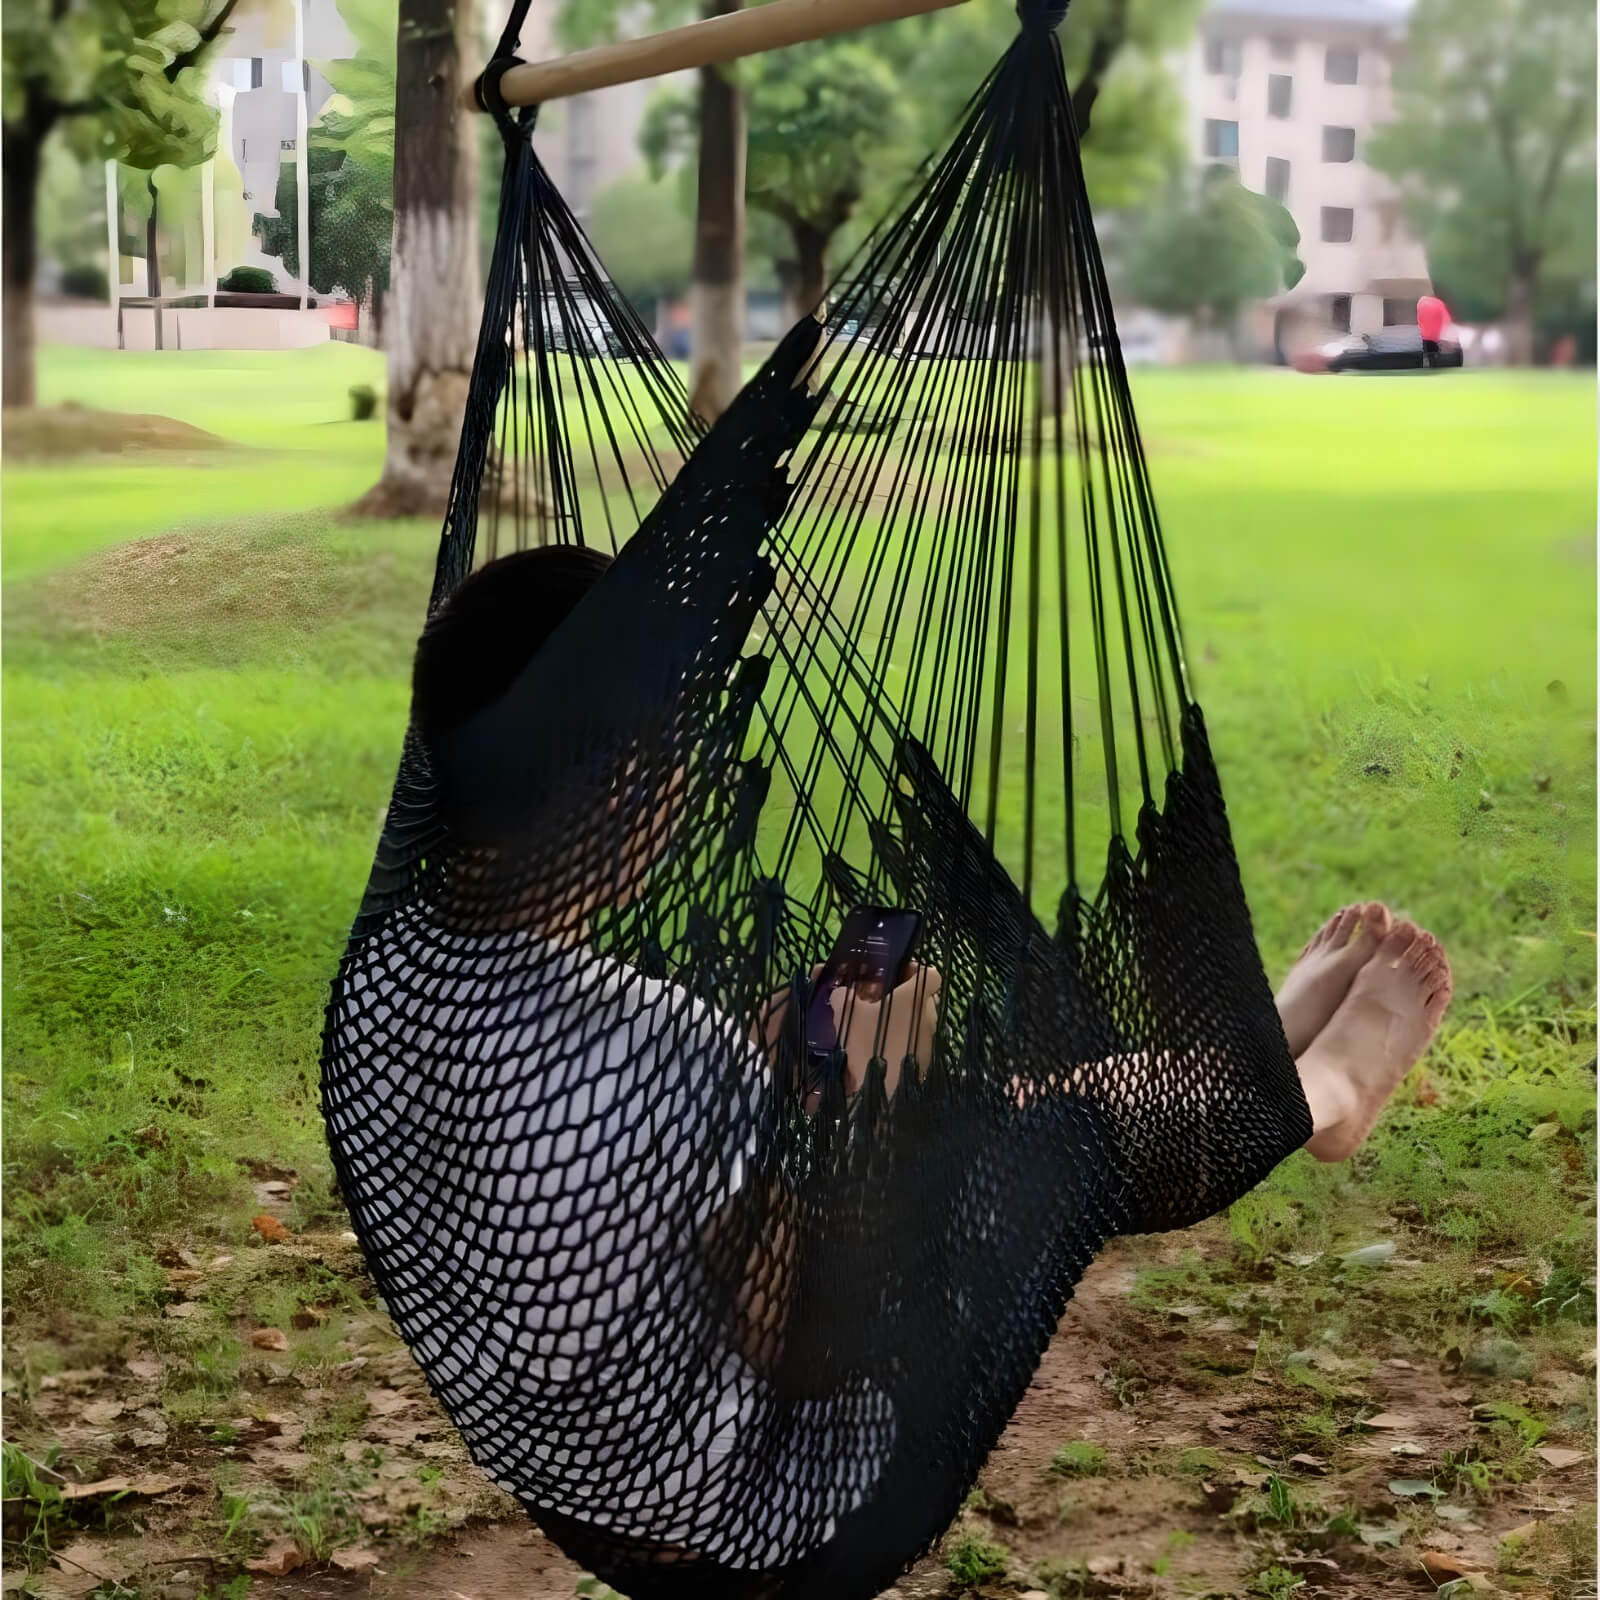 a-boy-sitting-in-a-Caribbean-hammocks